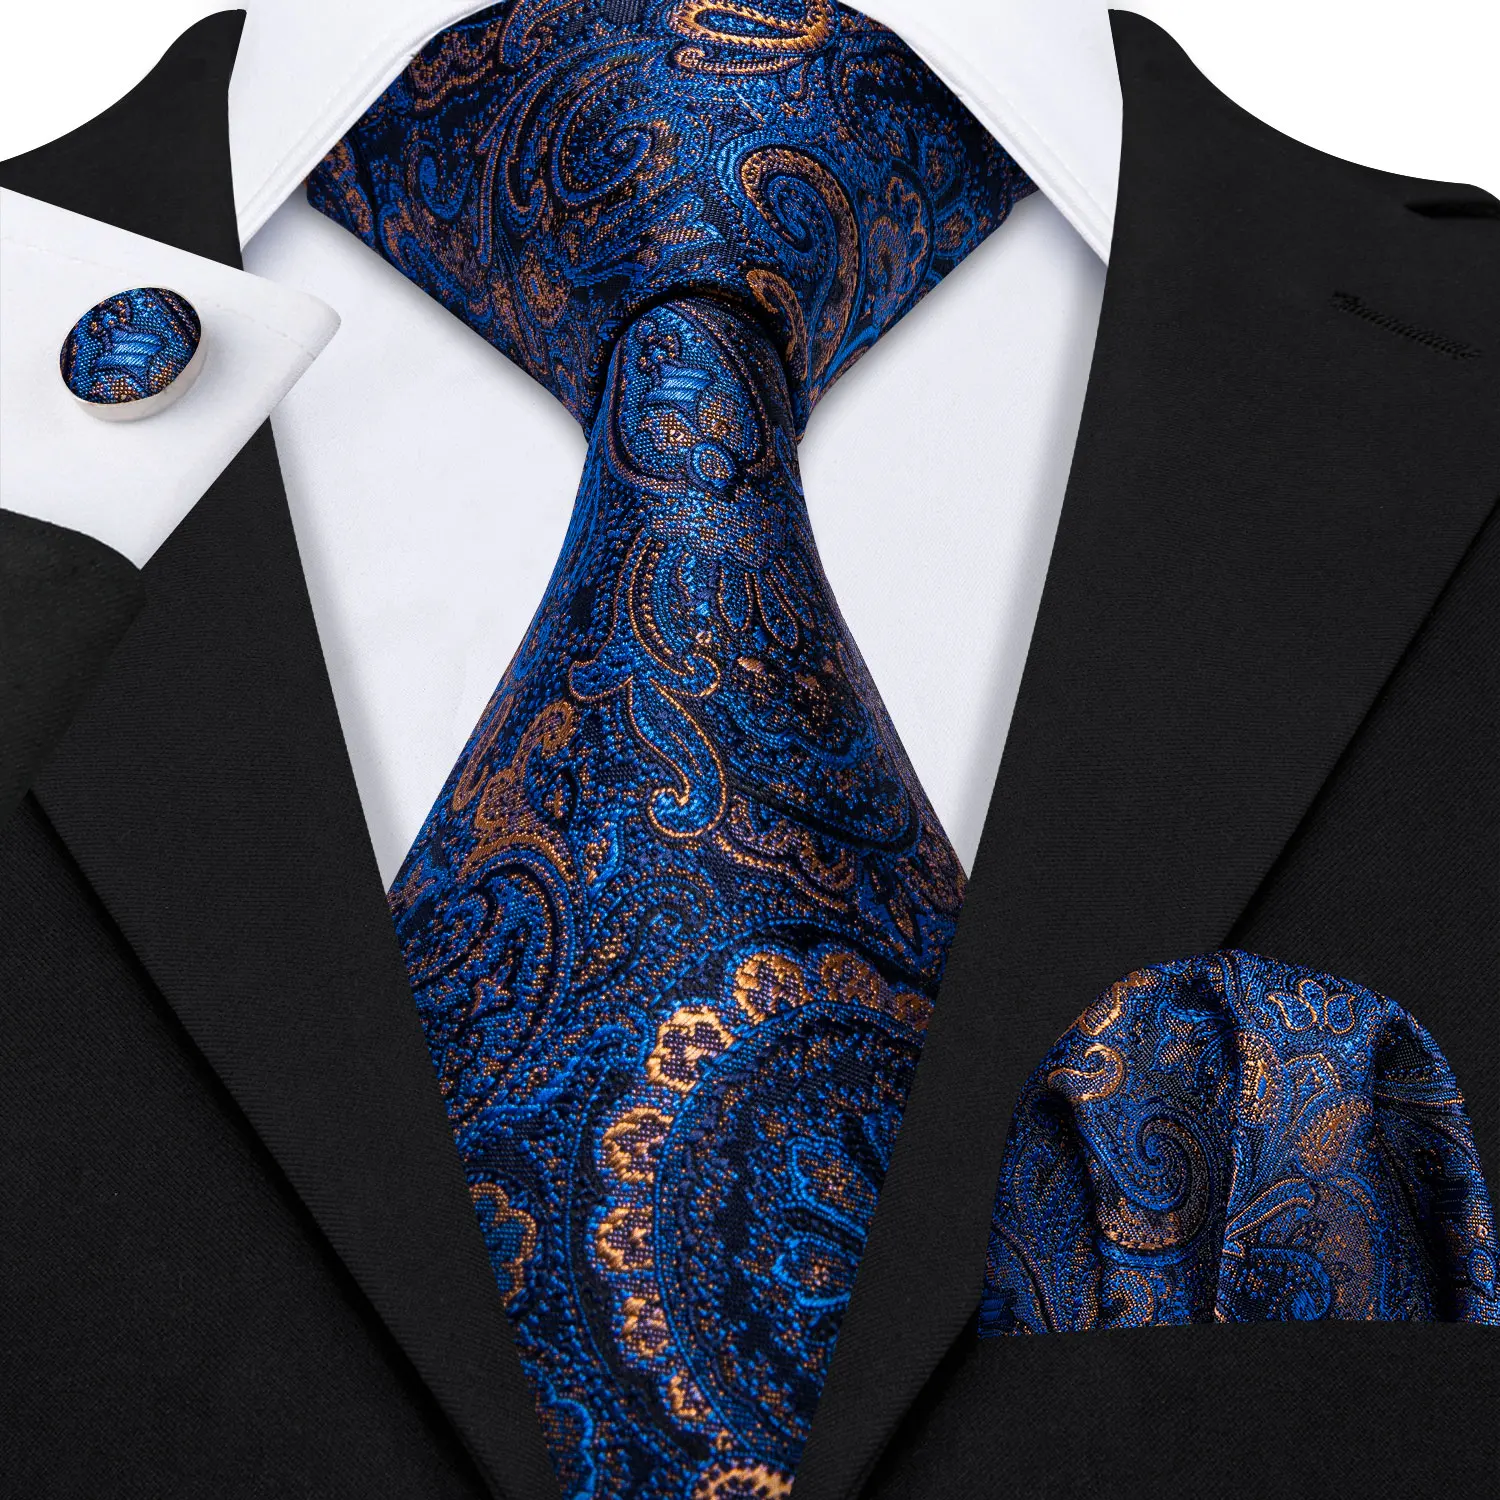 Barry.Wang Designers Gold Floral Men Ties 8.5cm Wide Silk Tie Hanky Box Set Gifts For Men Wedding Groom Business Necktie LS-5155